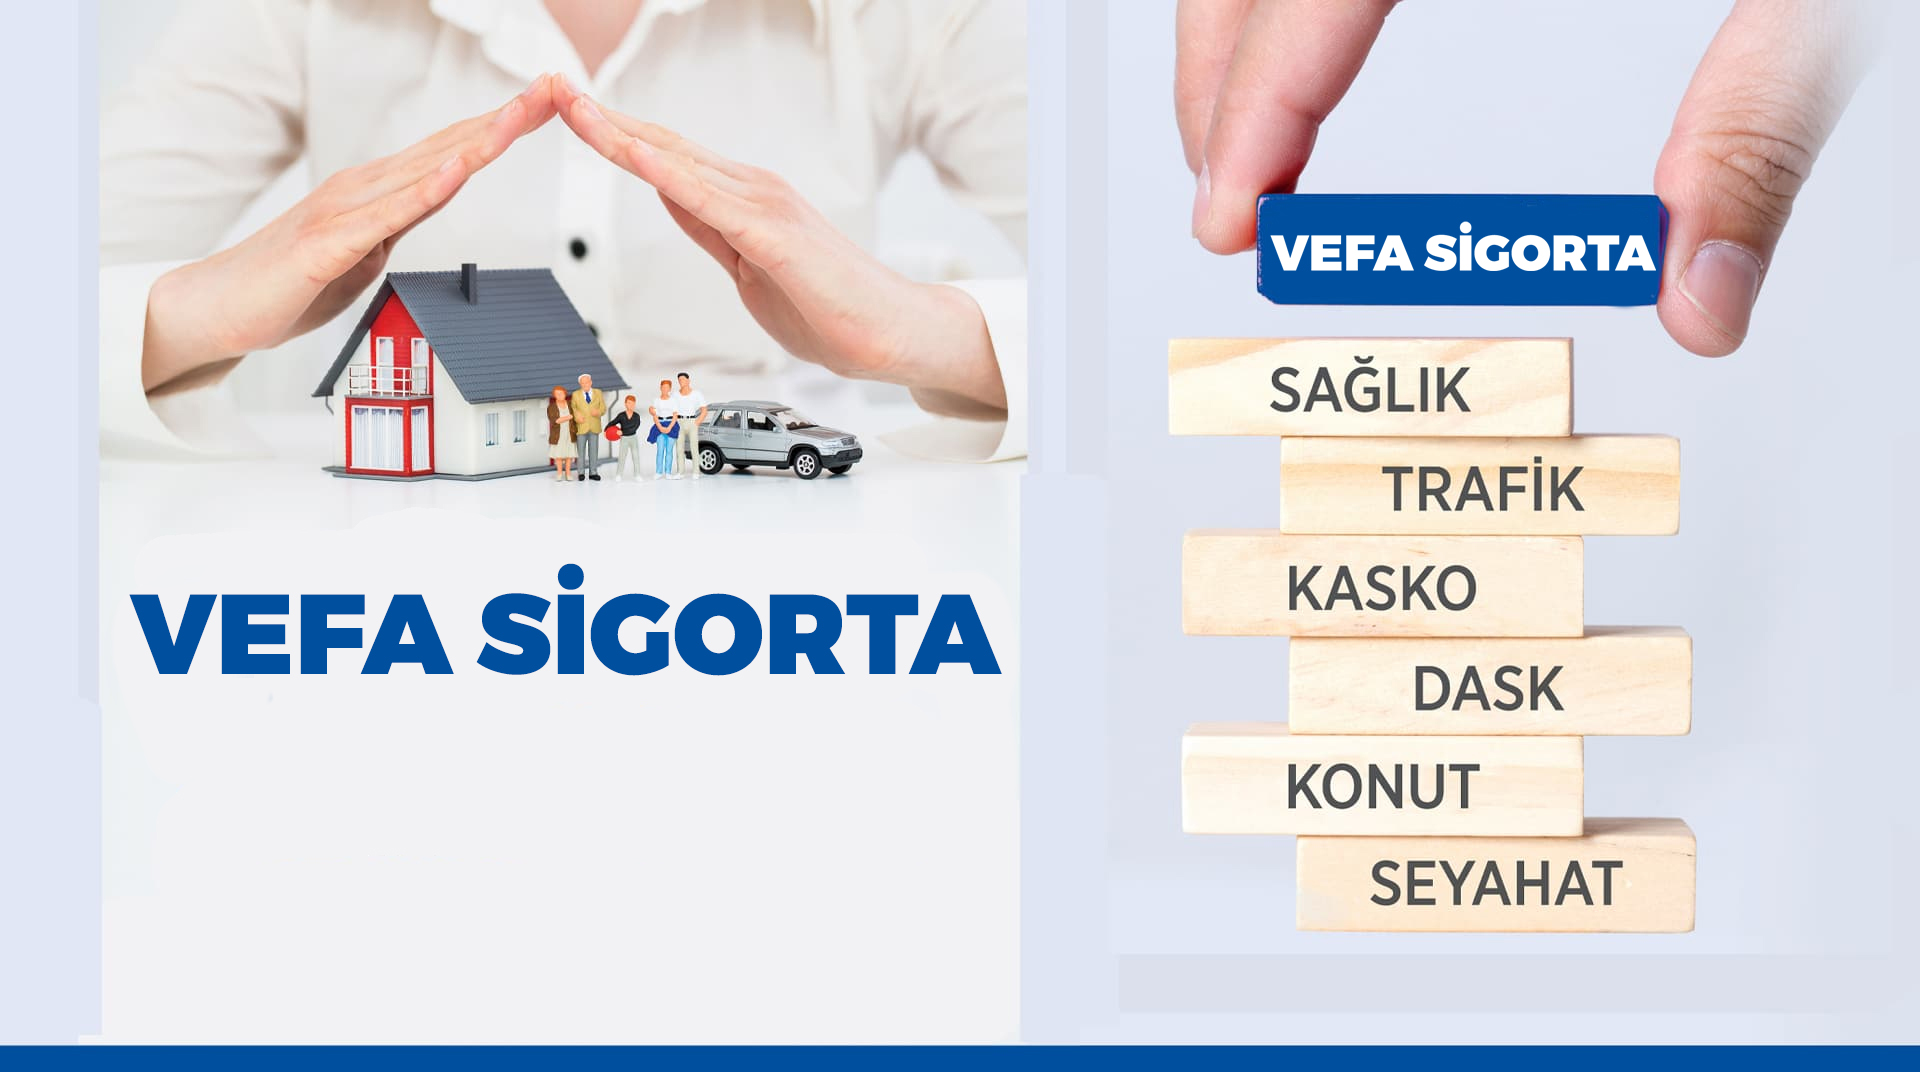 Vefa Sigorta